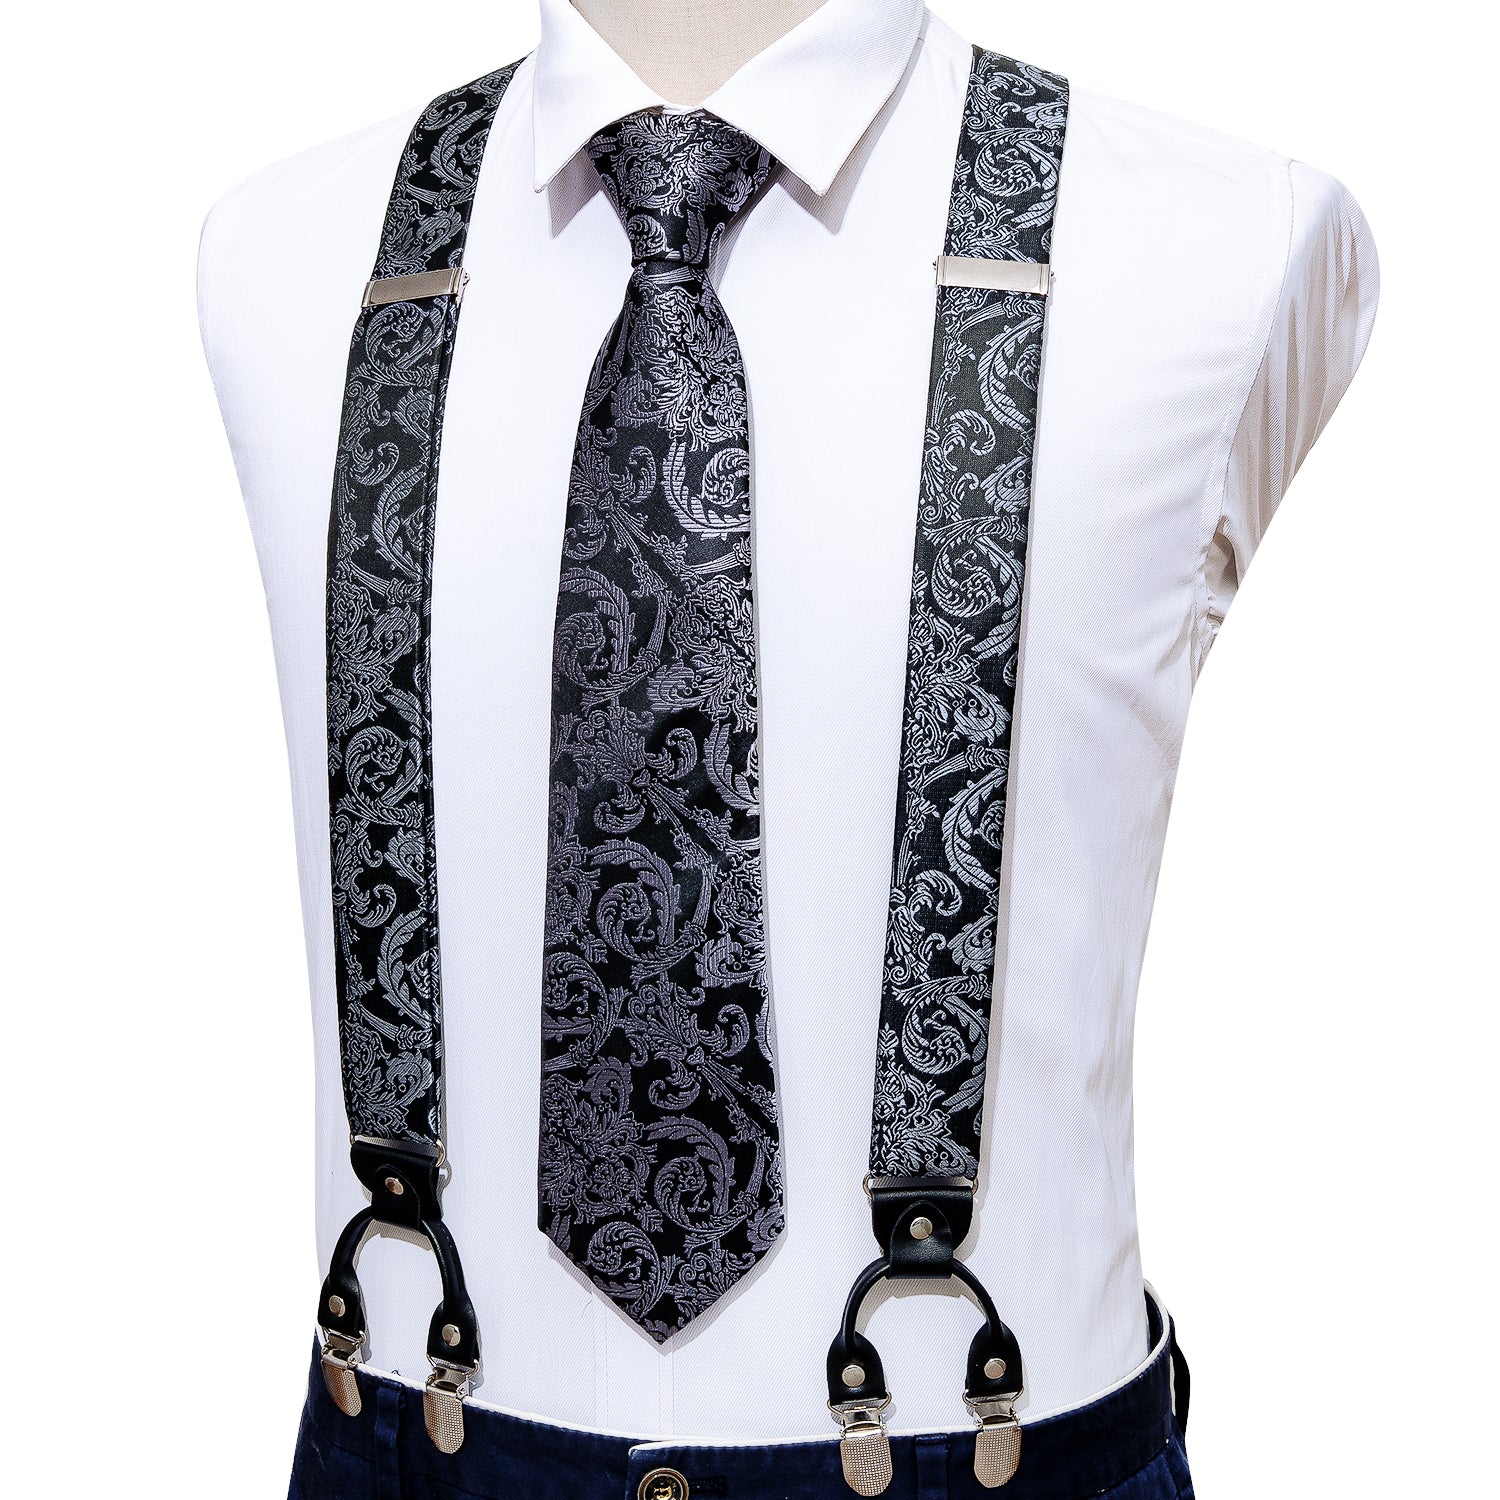 Black Grey Floral Tie Y Back Adjustable Suspenders Tie Set